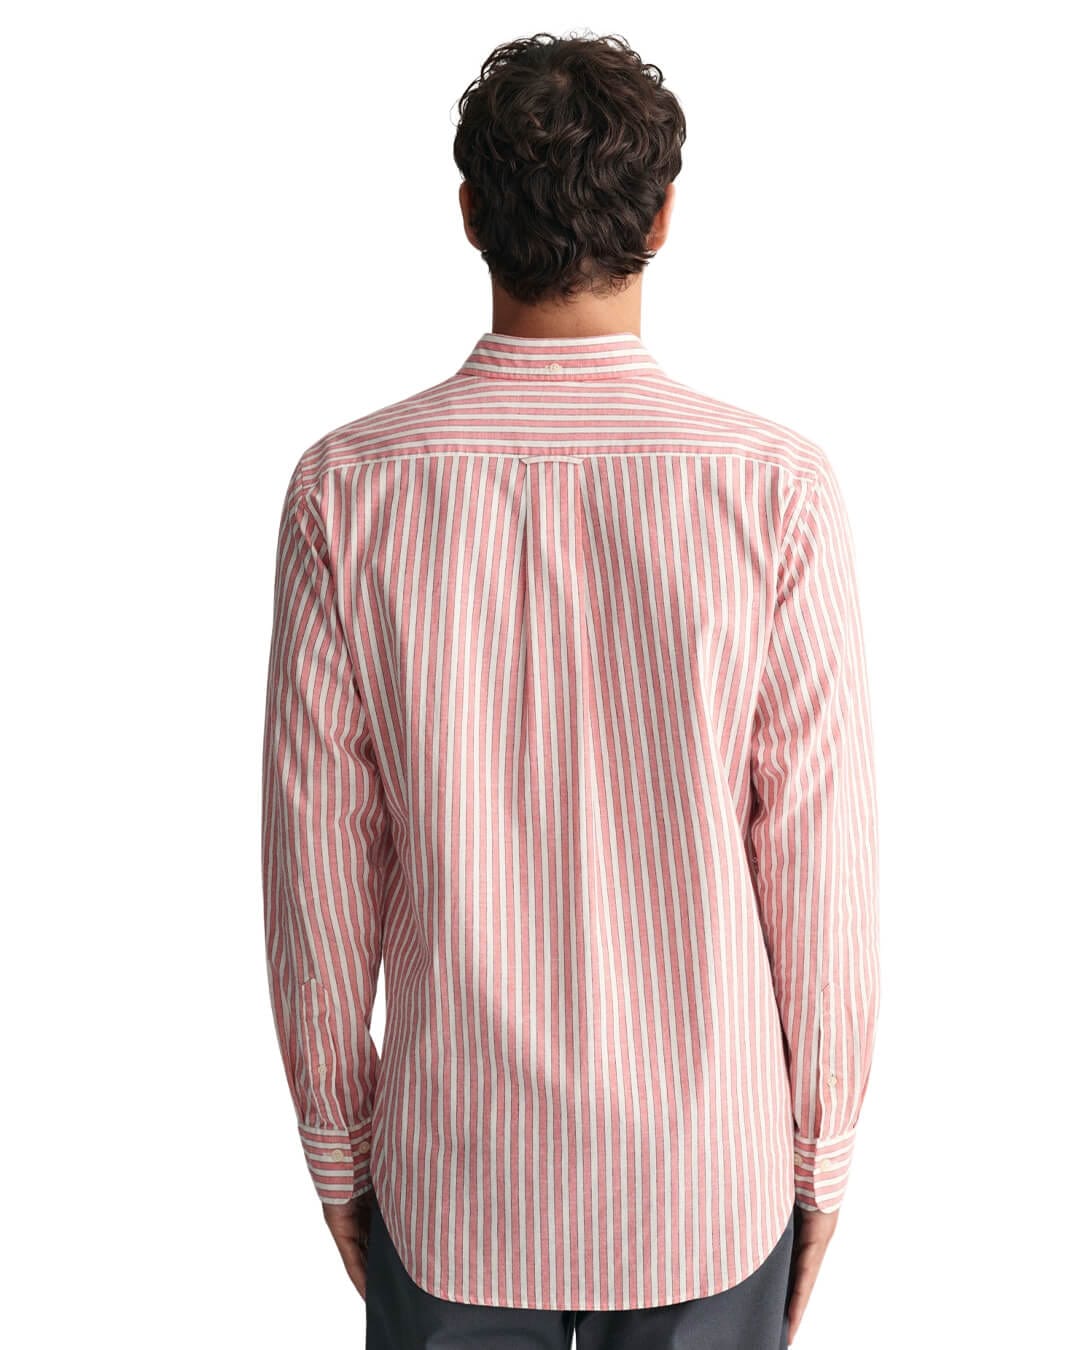 Gant Shirts REG COTTON LINEN STRIPE SHIRT G0628 SUNSET PINK